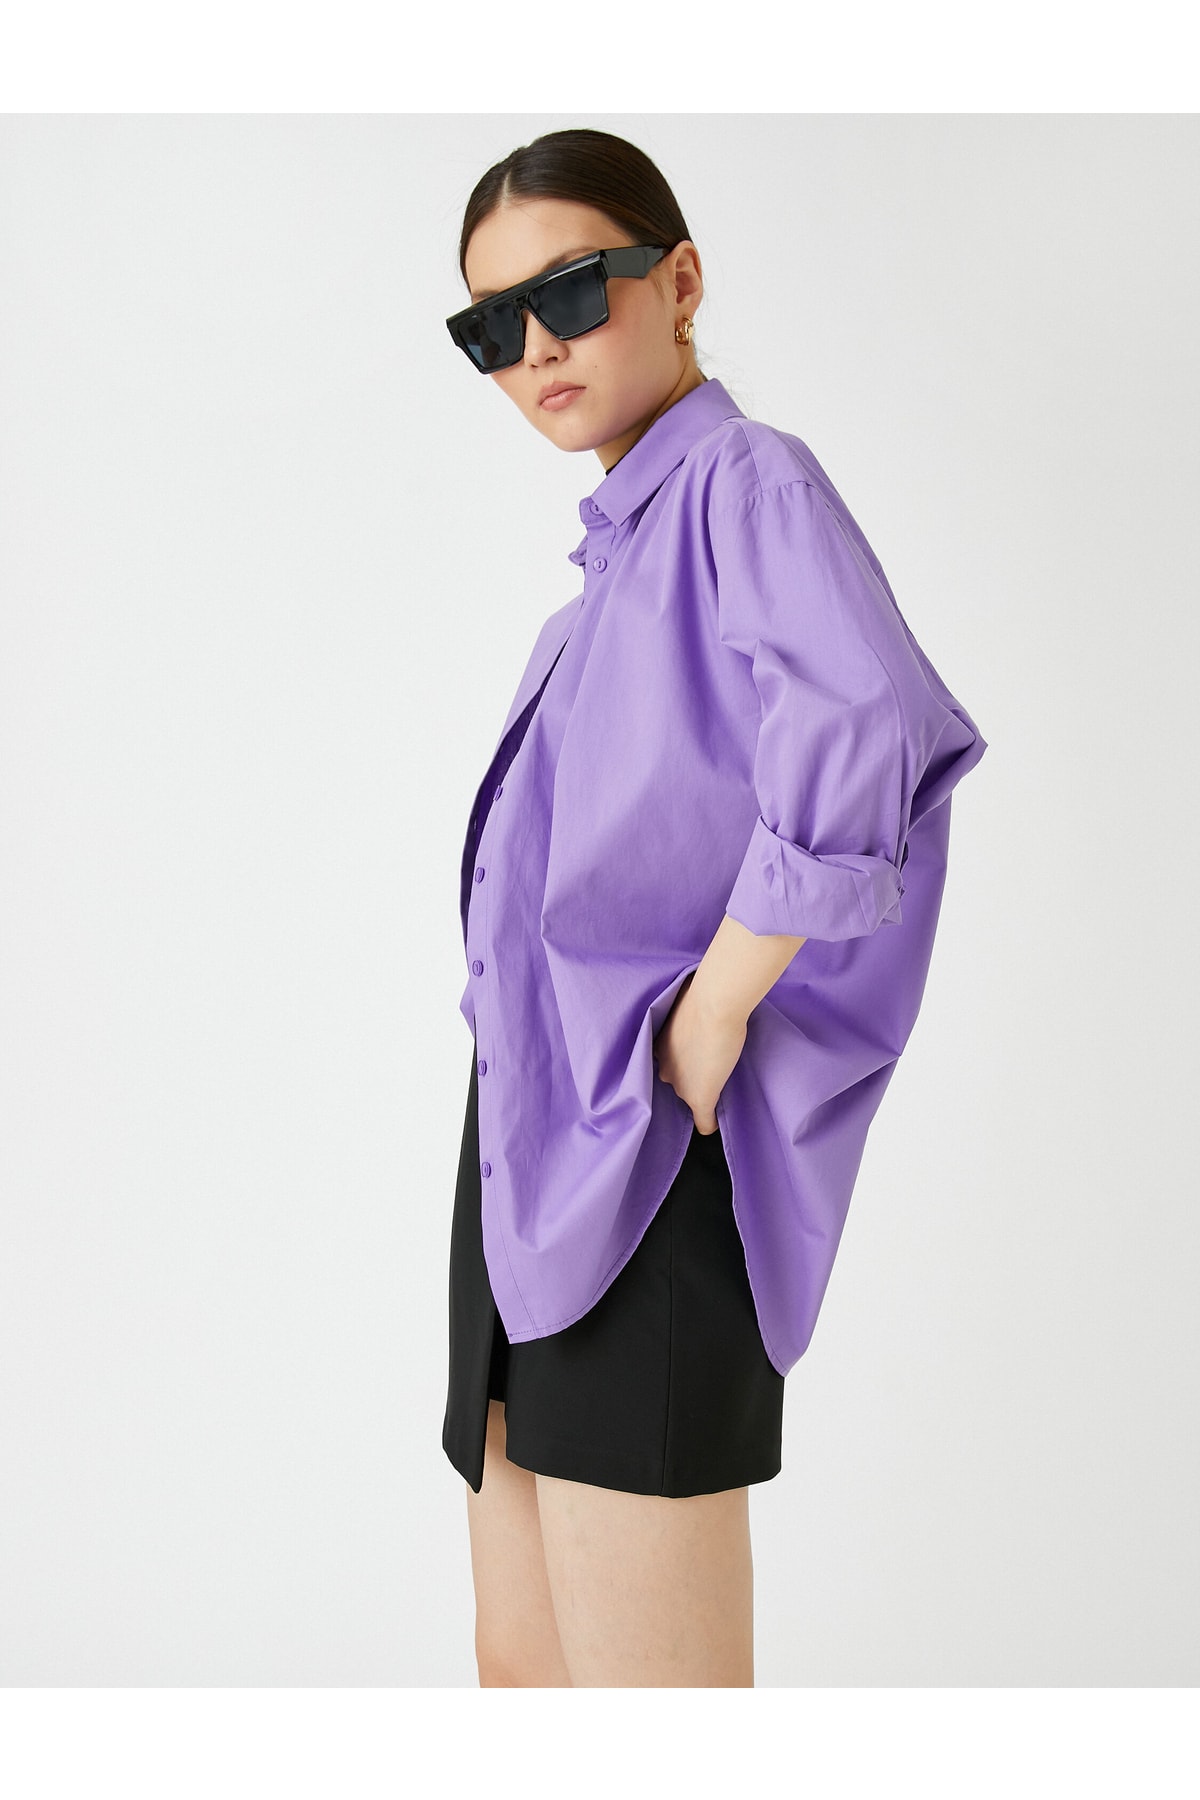 Базовая рубашка оверсайз из хлопка Koton, фиолетовый рубашка оверсайз из хлопка